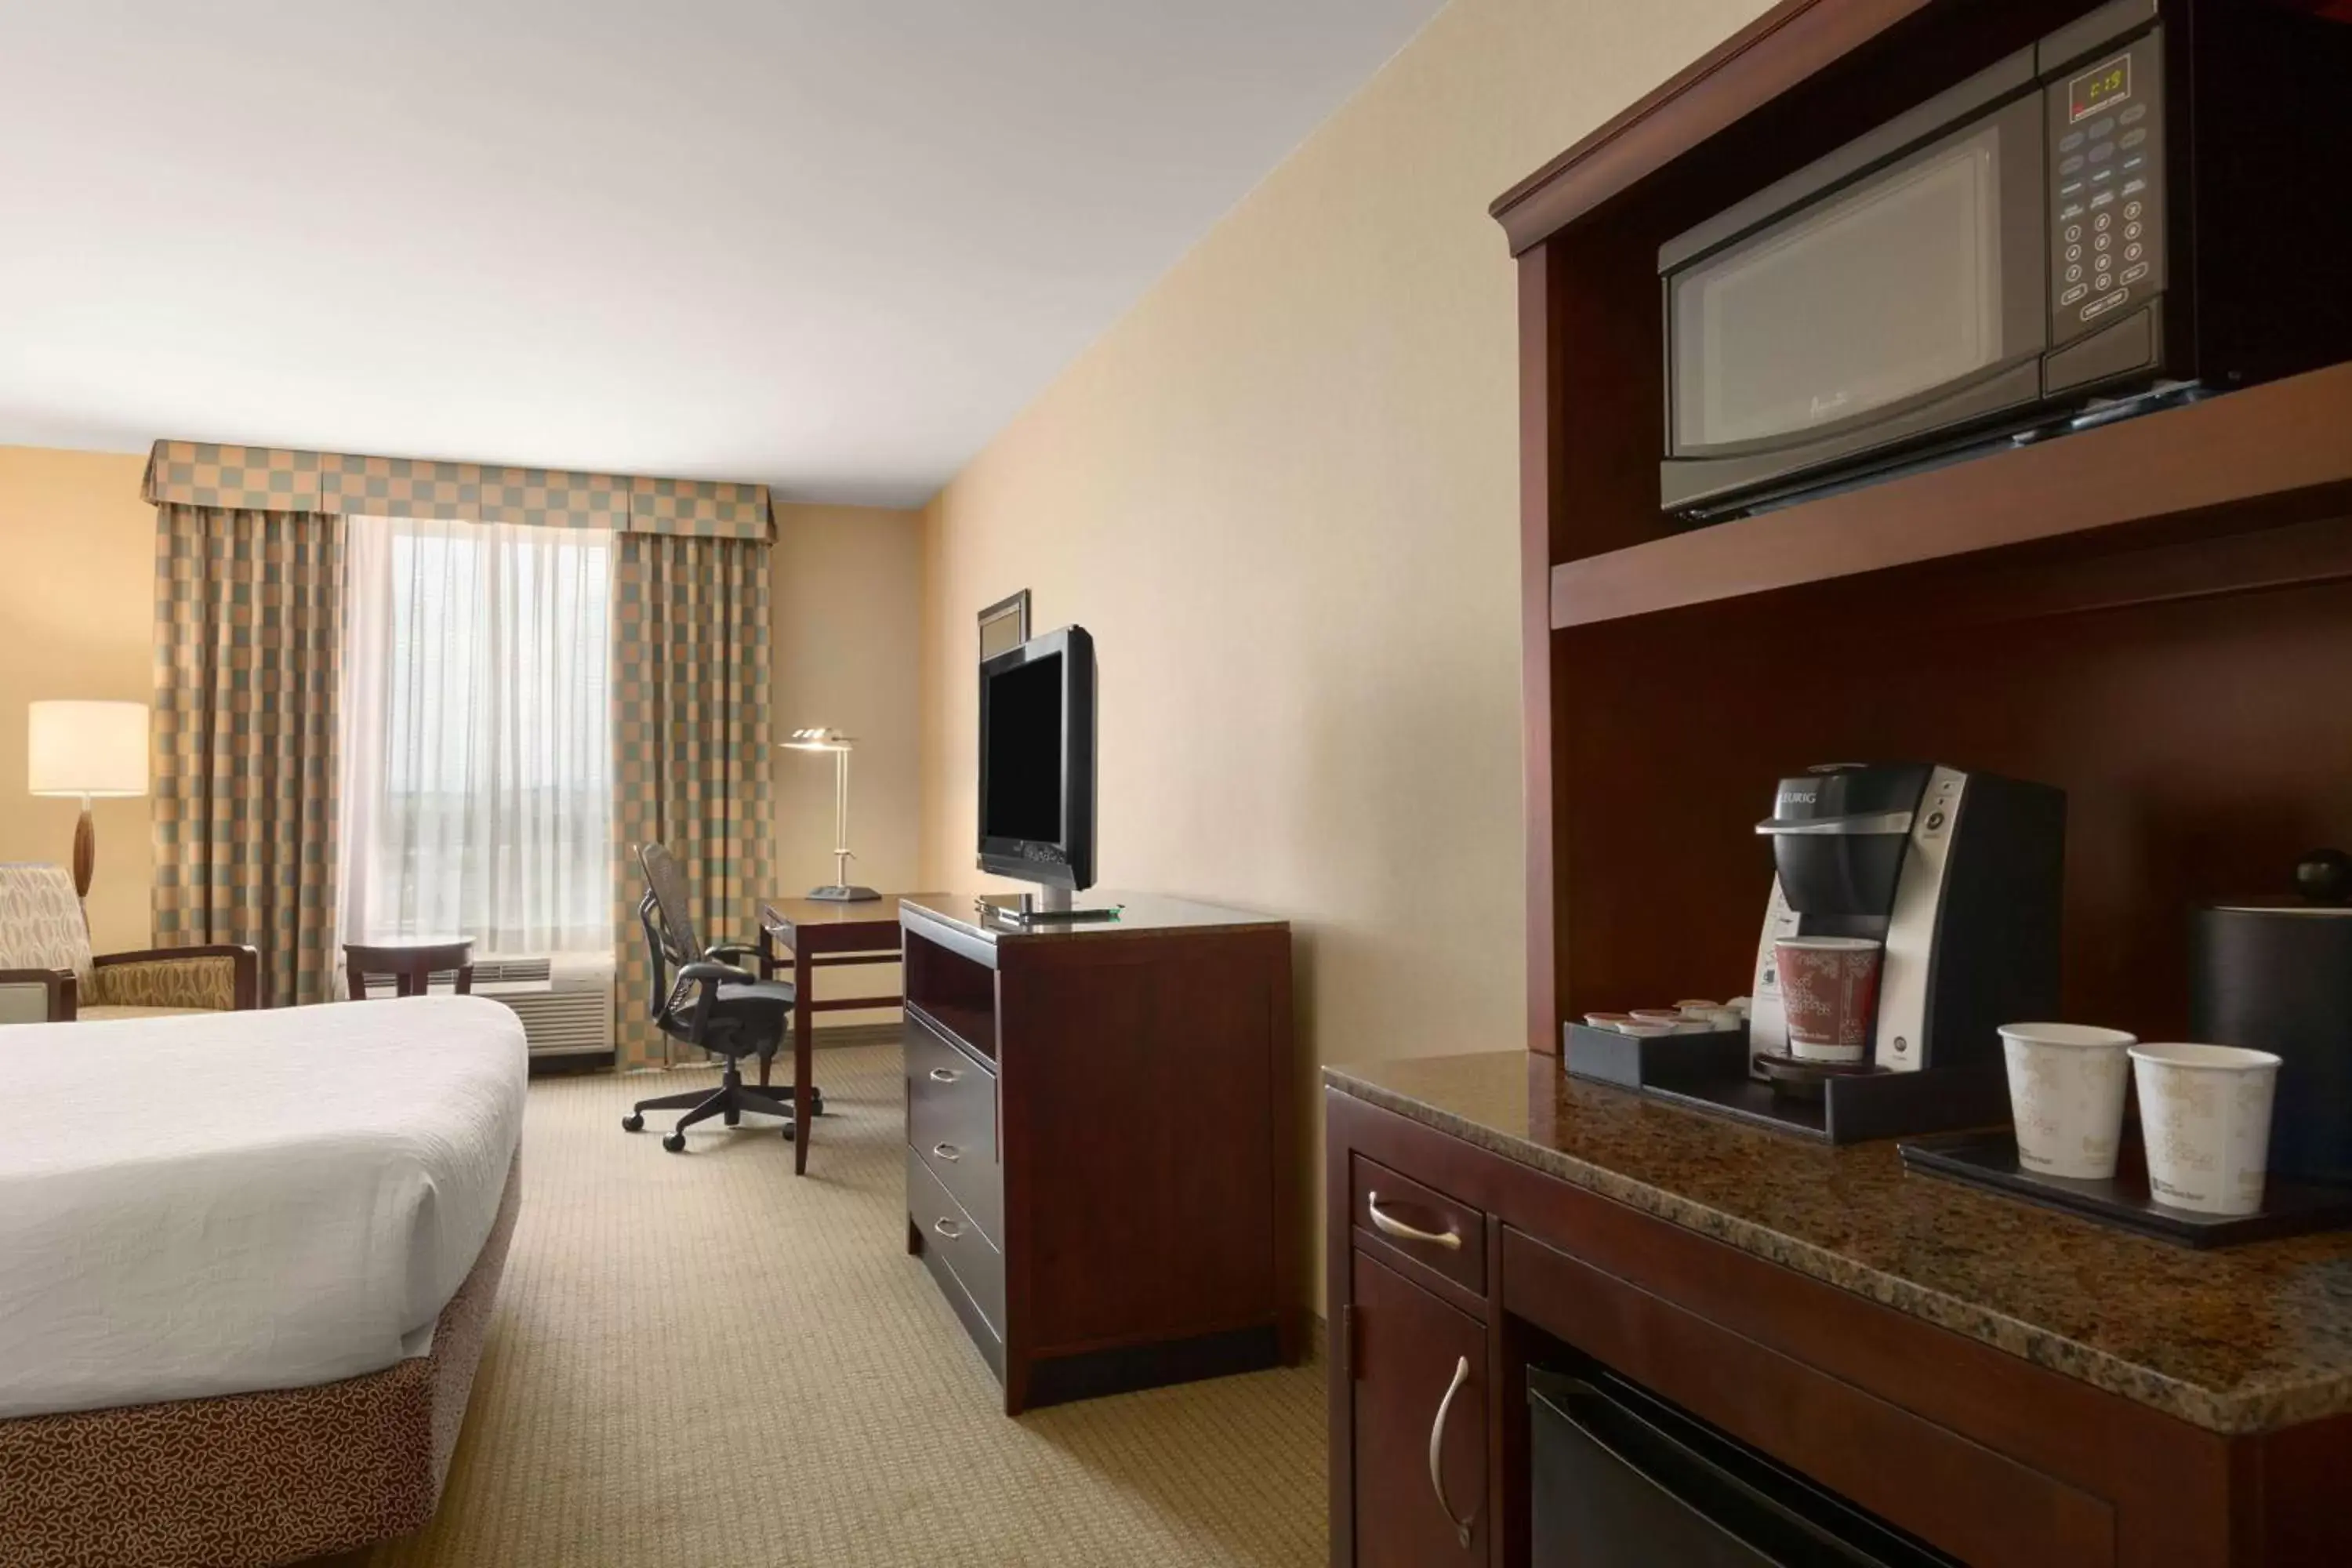 Bedroom, TV/Entertainment Center in Hilton Garden Inn Dulles North